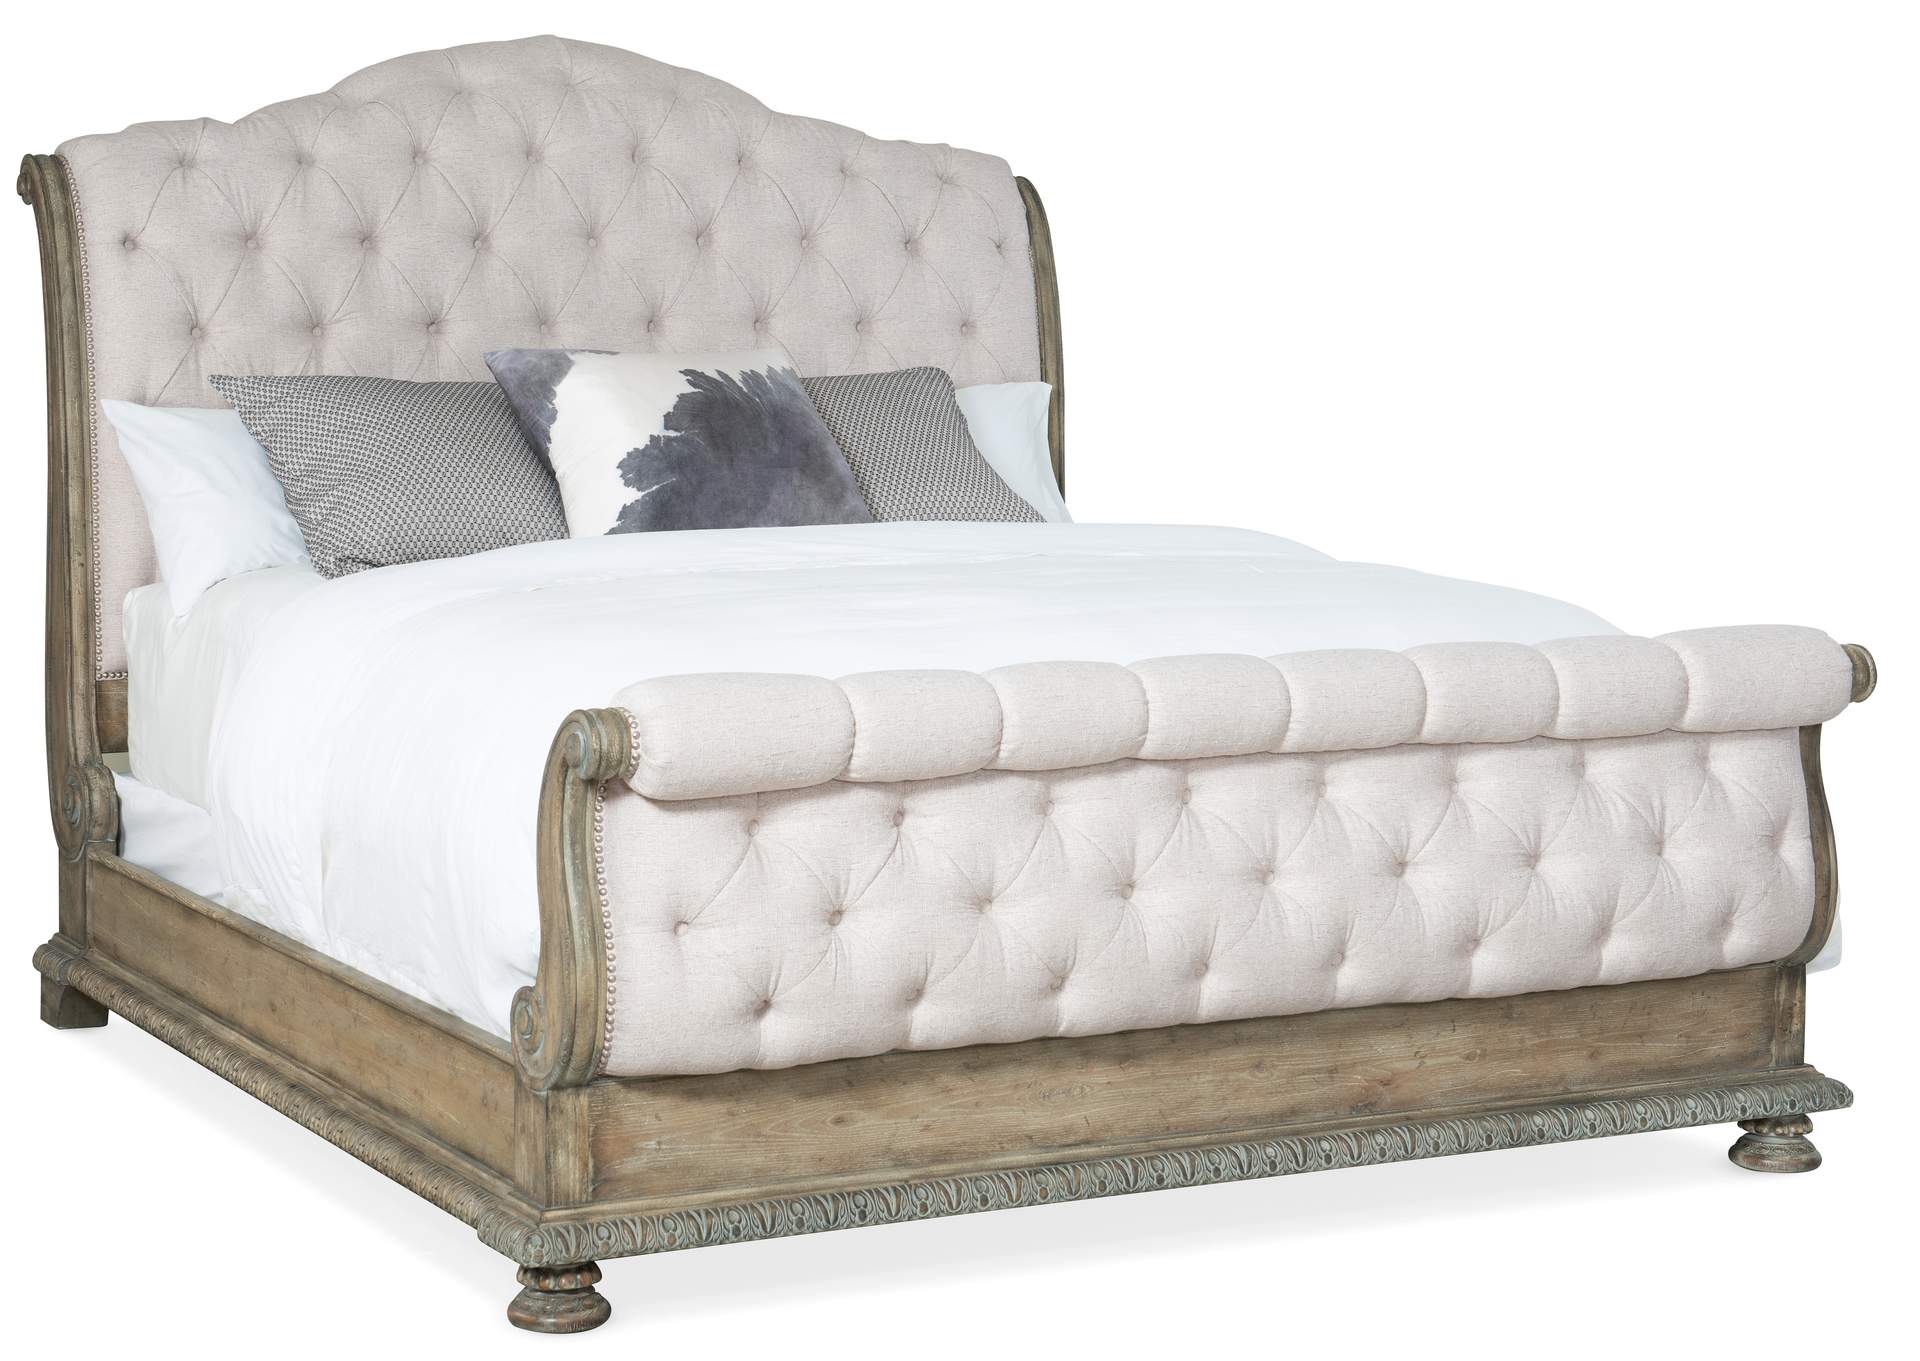 Castella King Tufted Bed,Hooker Furniture